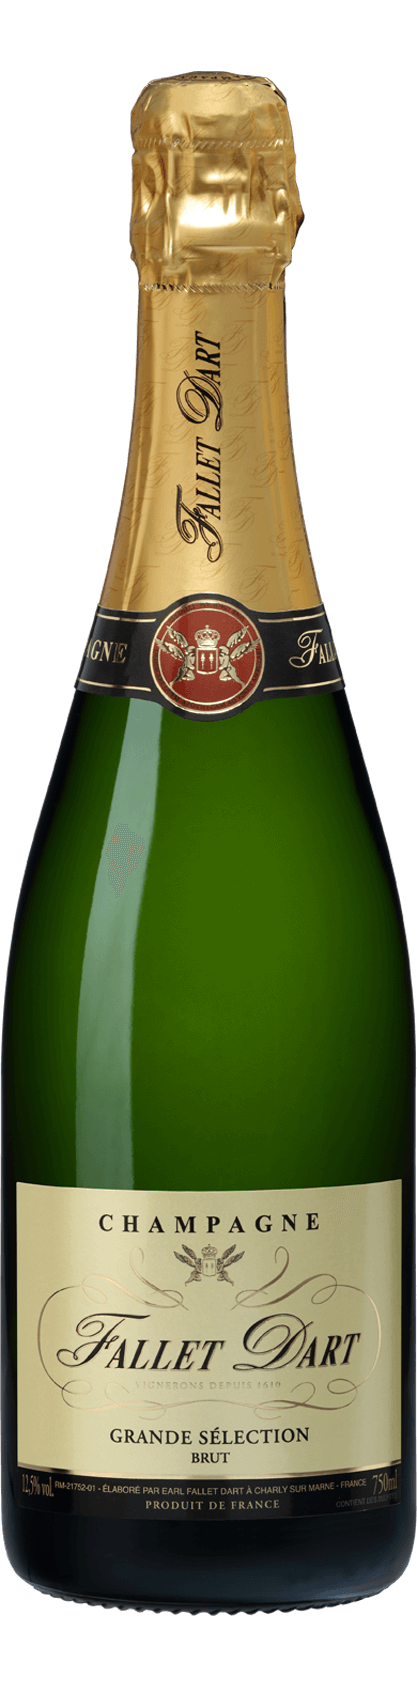 Grande Selection Brut - Champagne Fallet Dart